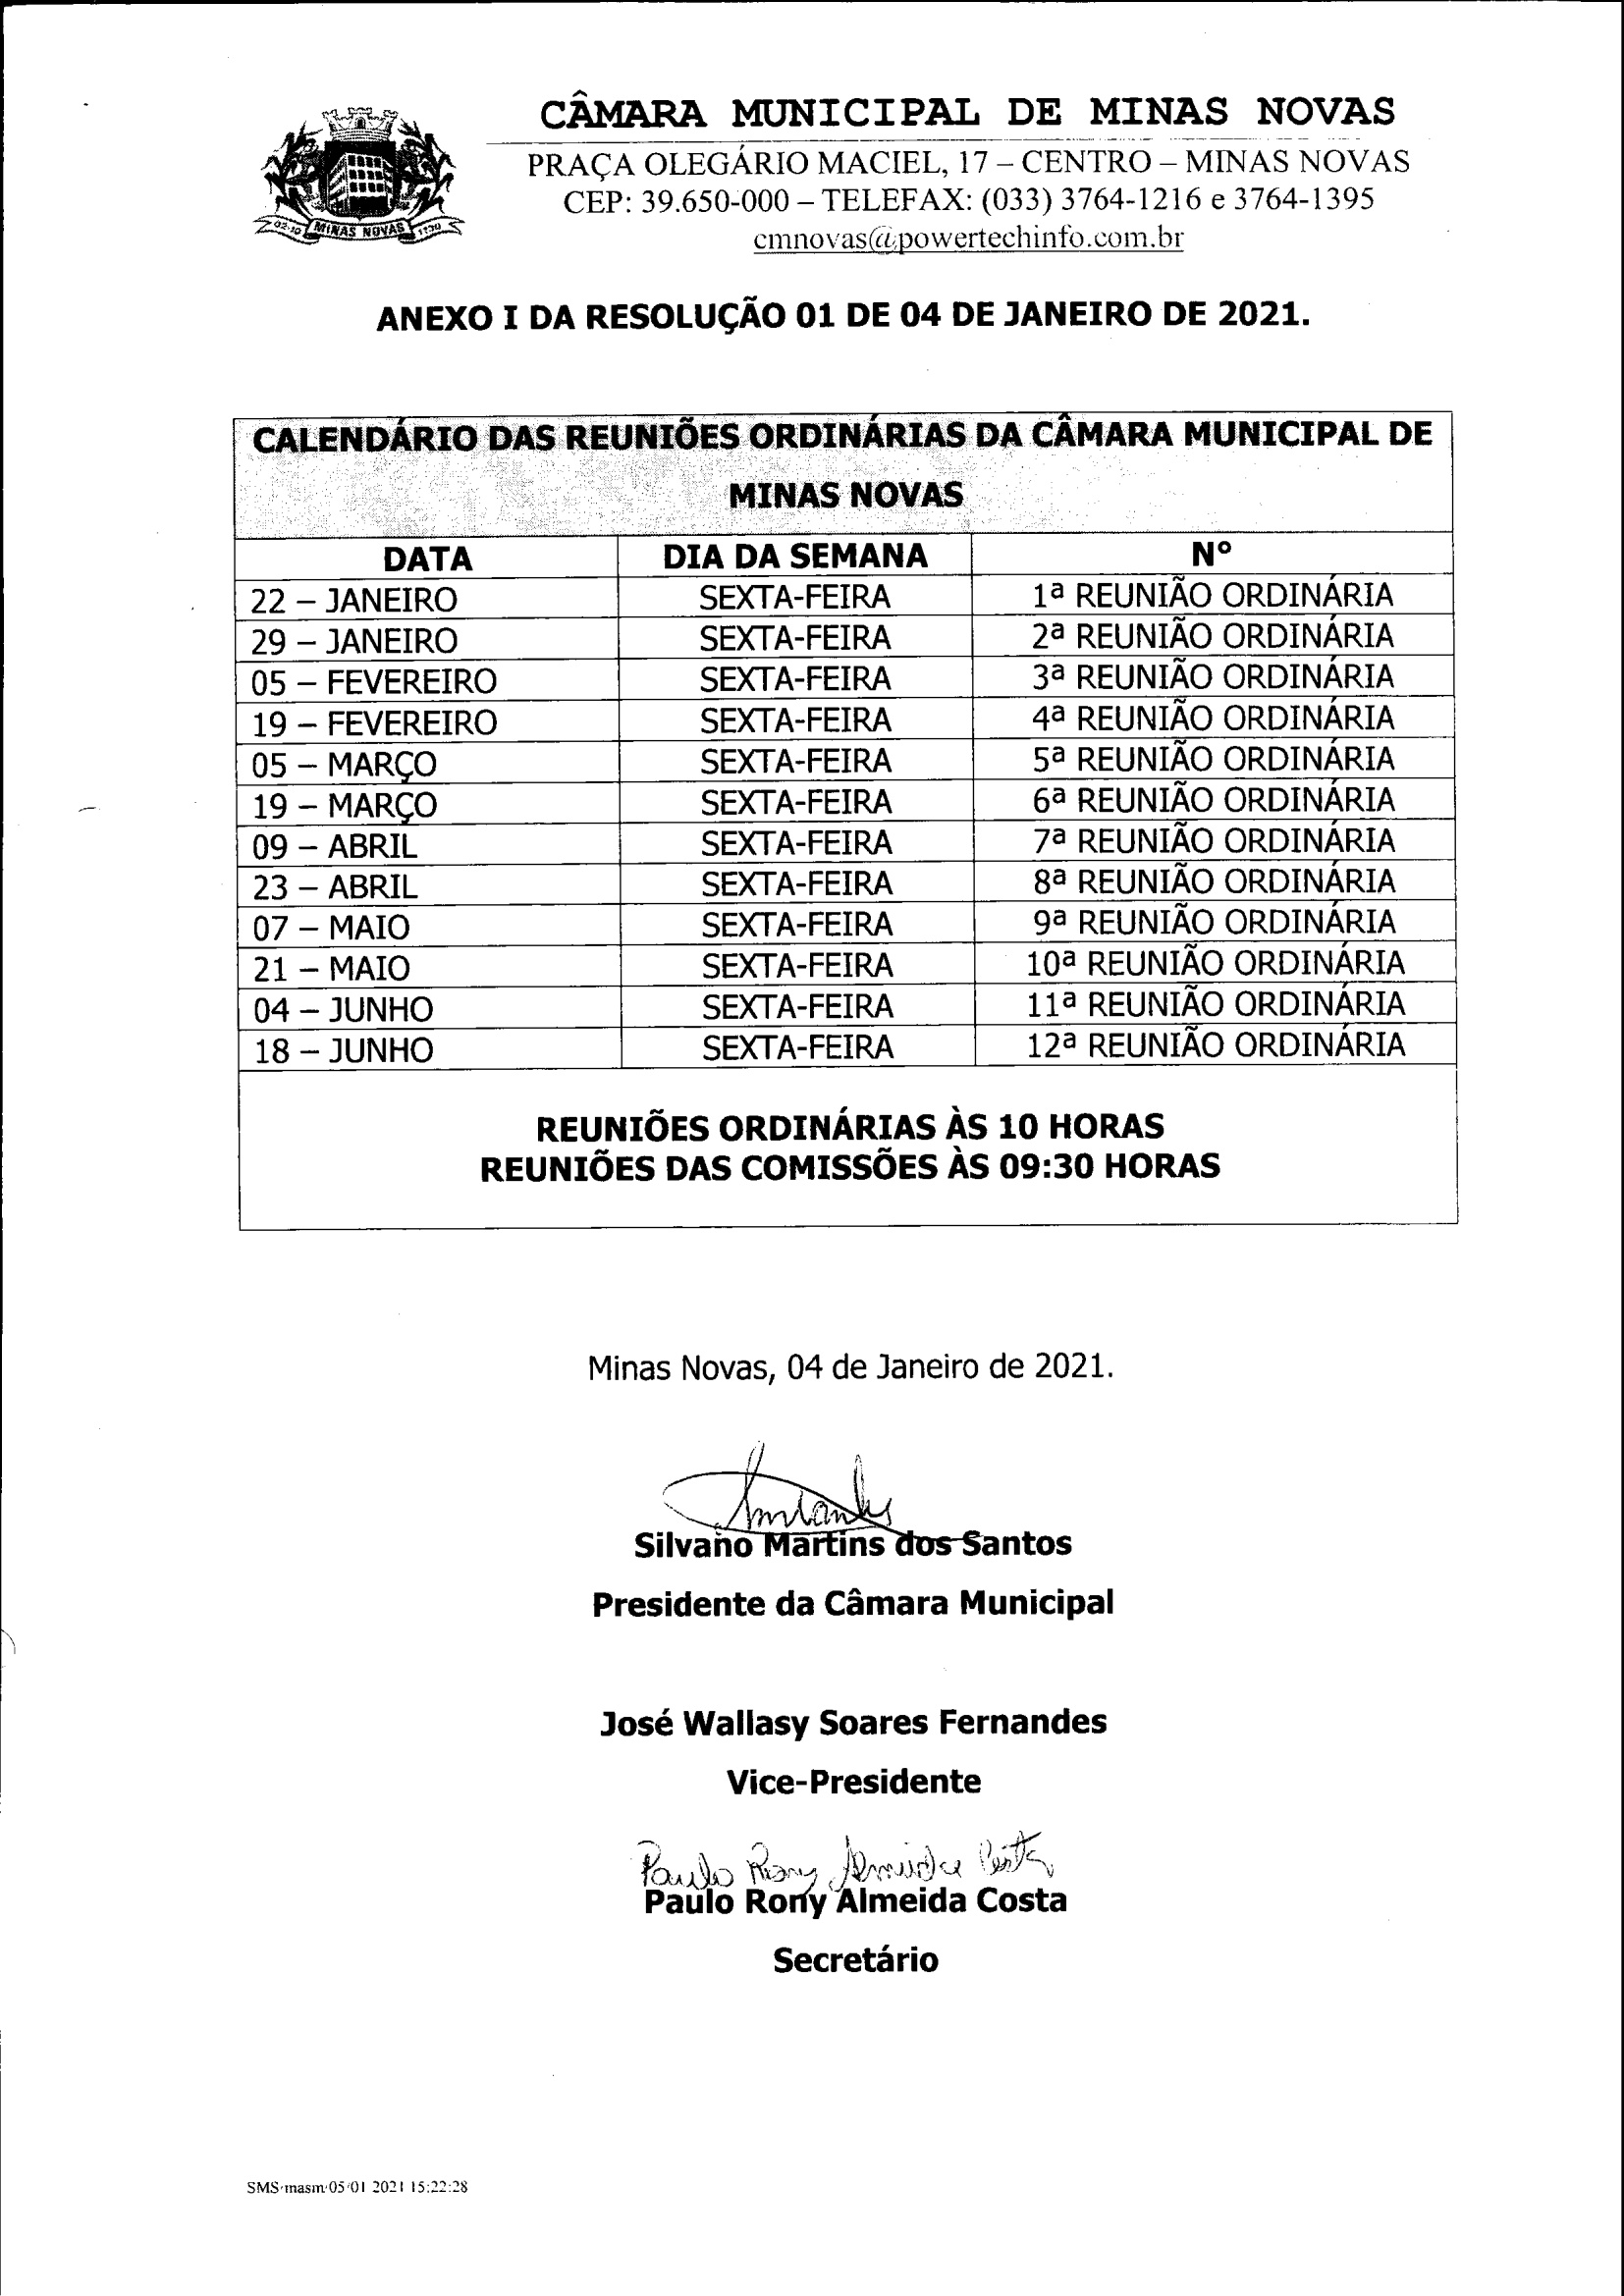 Calendário das Reuniões Ordinárias da Câmara Municipal de Minas Novas (Exercício de 2021) - 01º Semestre